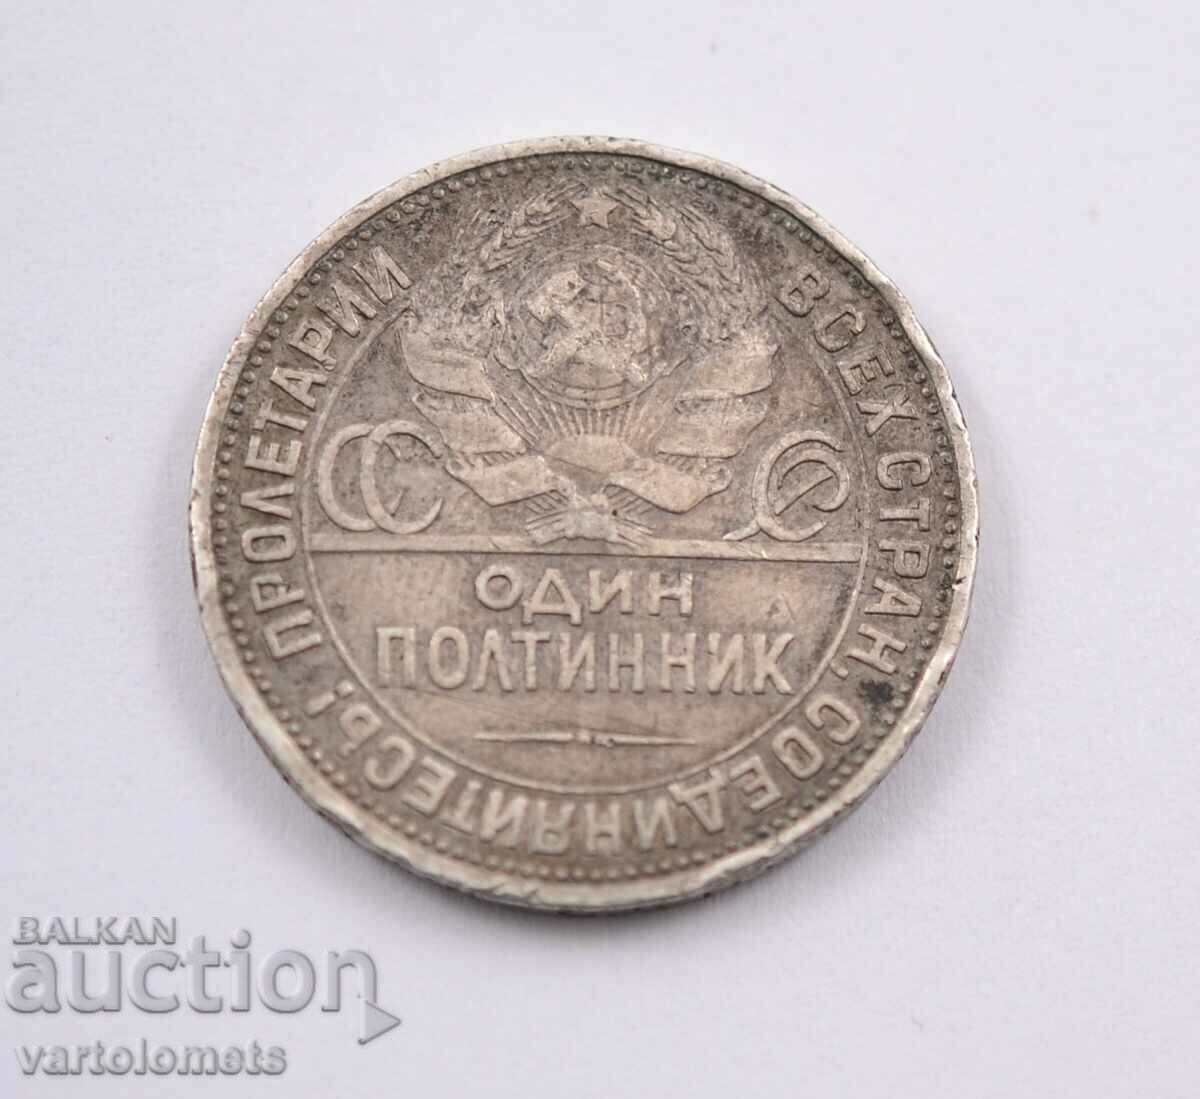 1 ασήμι poltinnik - 1924 - ΕΣΣΔ Σοβιετική Ένωση